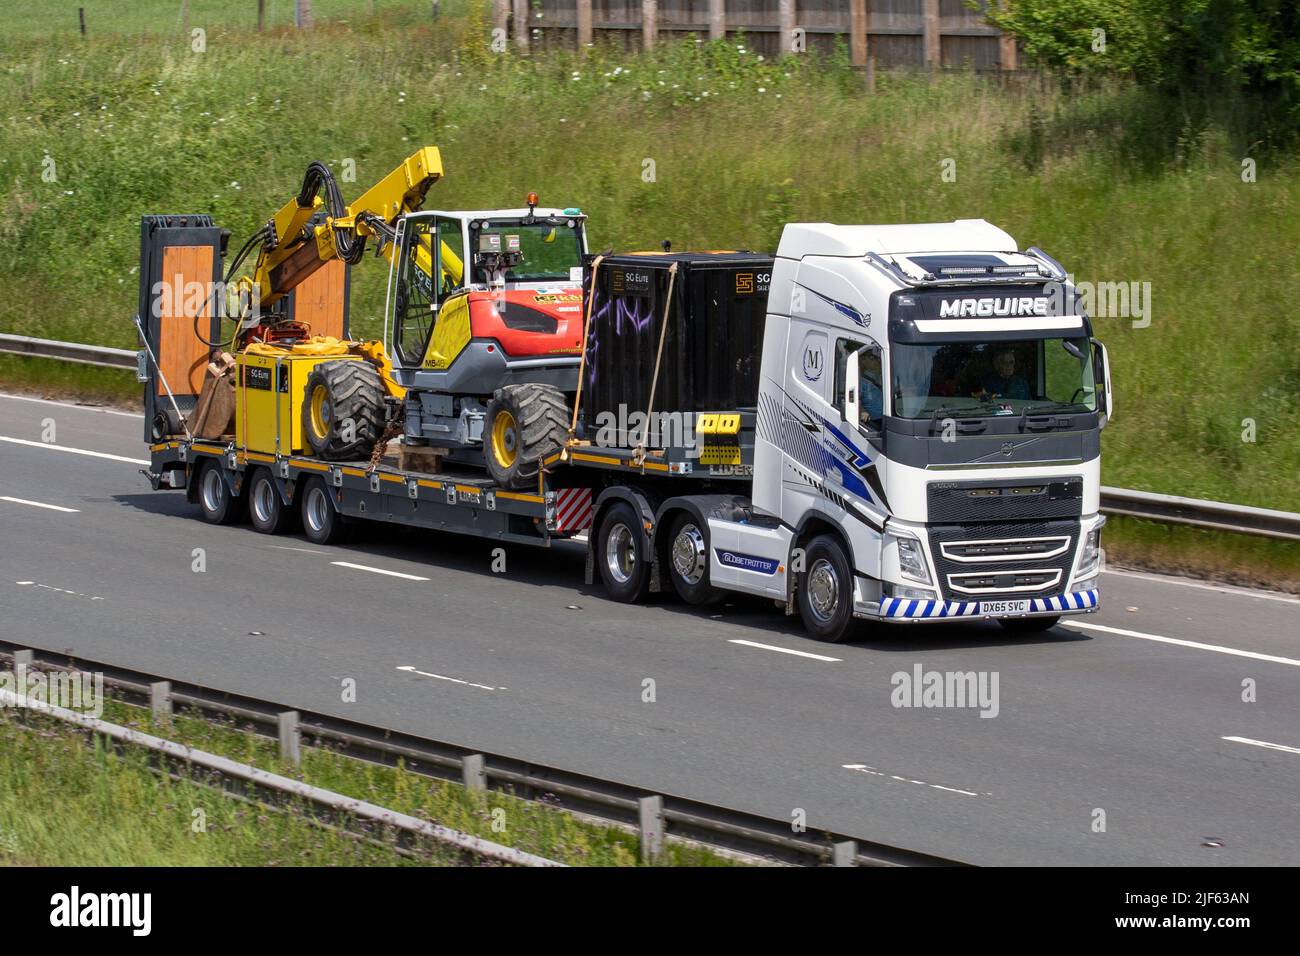 MAGUIRE Industrieverkehr. Volvo 1277cc Traktor Unit Towing LIDER Anhänger Tieflader mit M540 Kelly Earthmoving Ausrüstung auf der Autobahn M61 UK Stockfoto